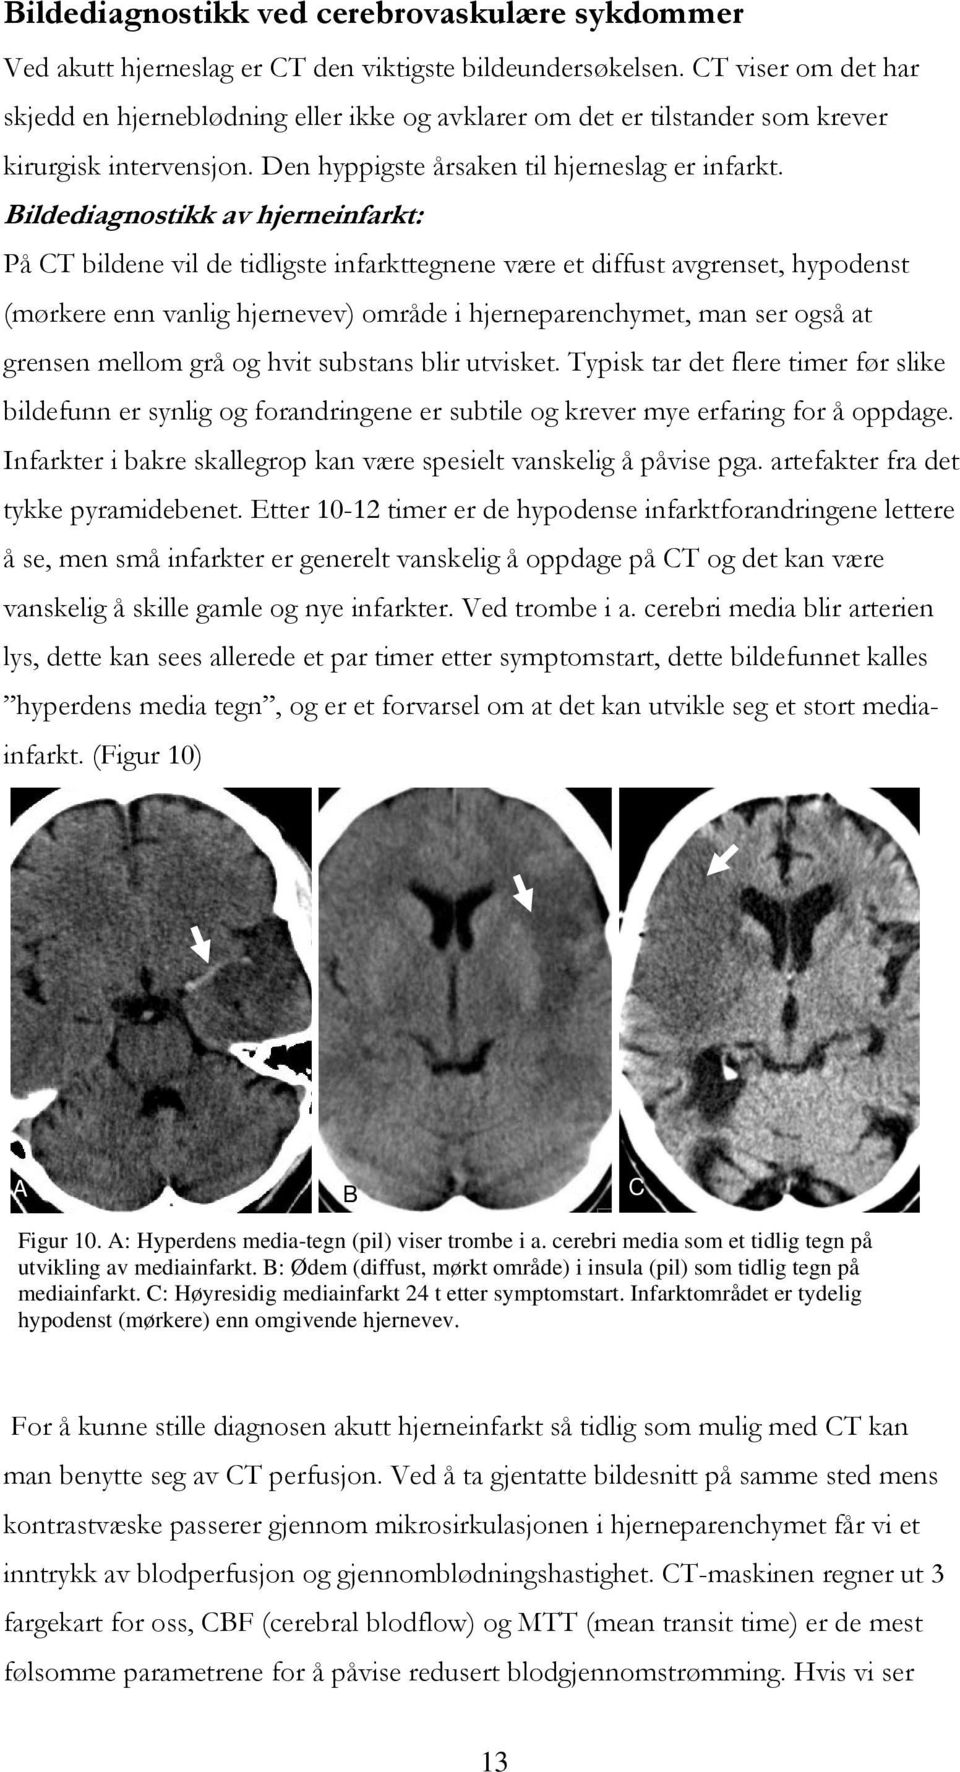 Bildediagnostikk av hjerneinfarkt: På CT bildene vil de tidligste infarkttegnene være et diffust avgrenset, hypodenst (mørkere enn vanlig hjernevev) område i hjerneparenchymet, man ser også at